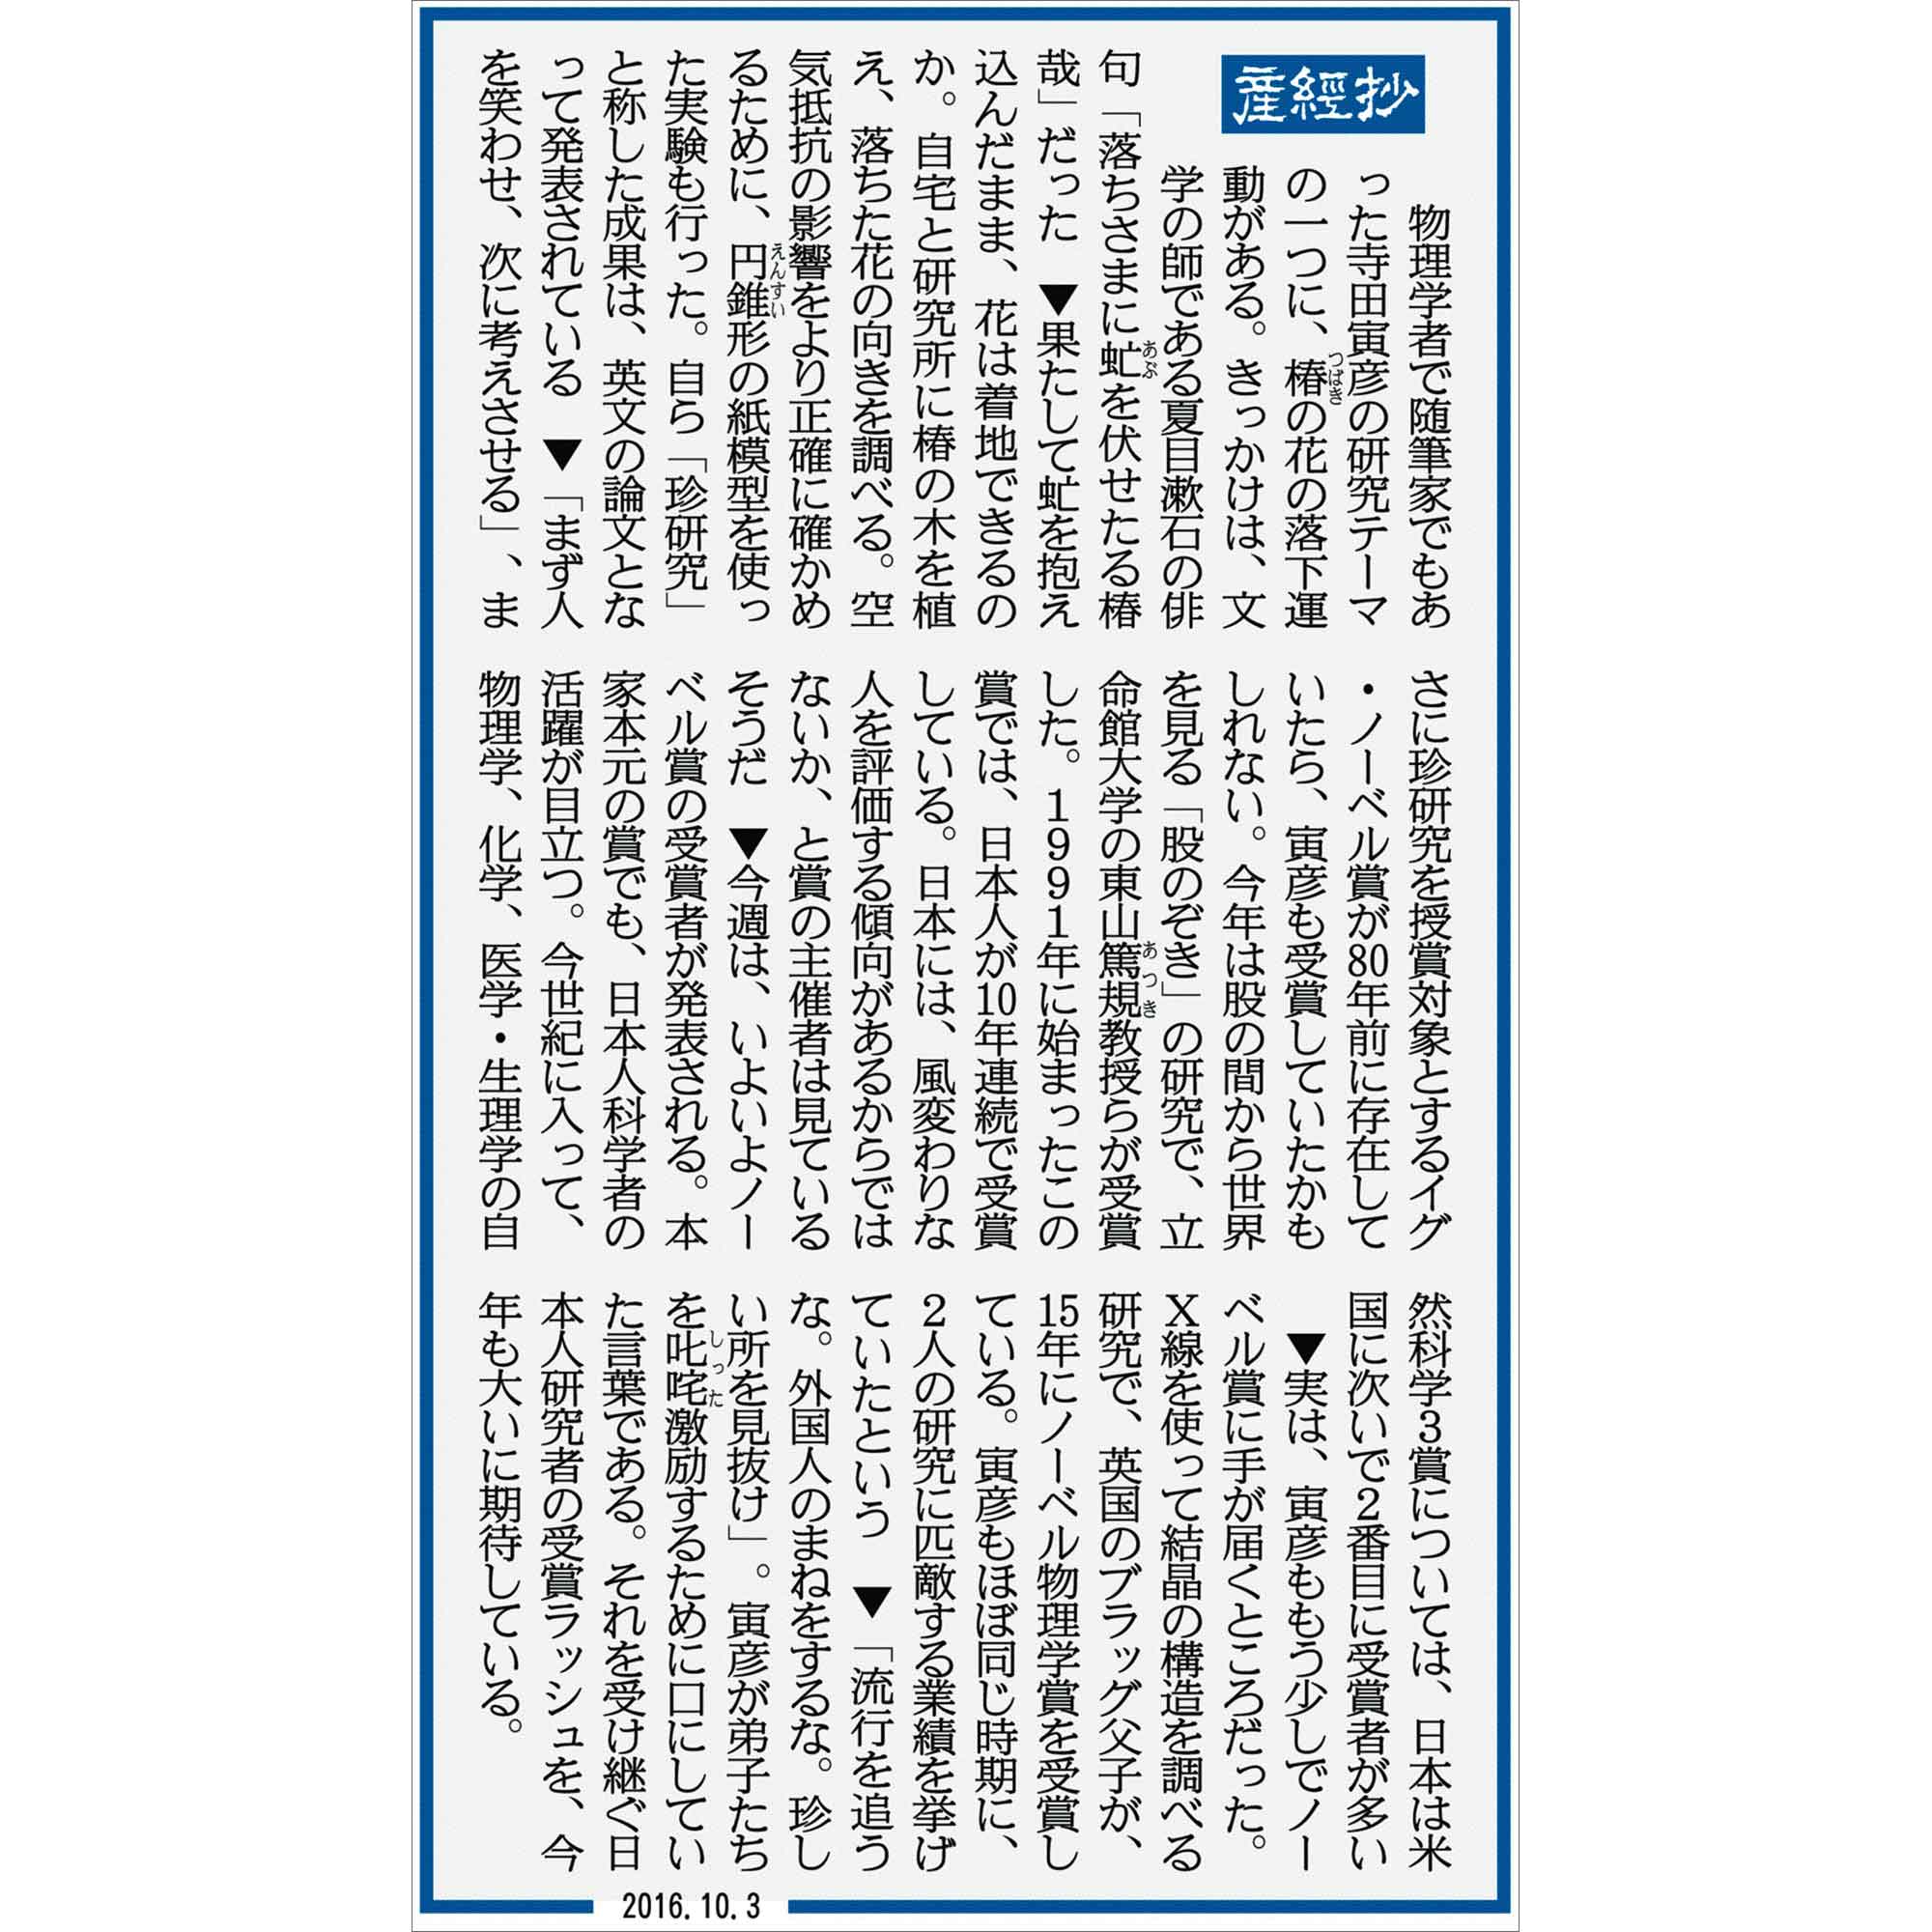 休刊 産経 日 新聞